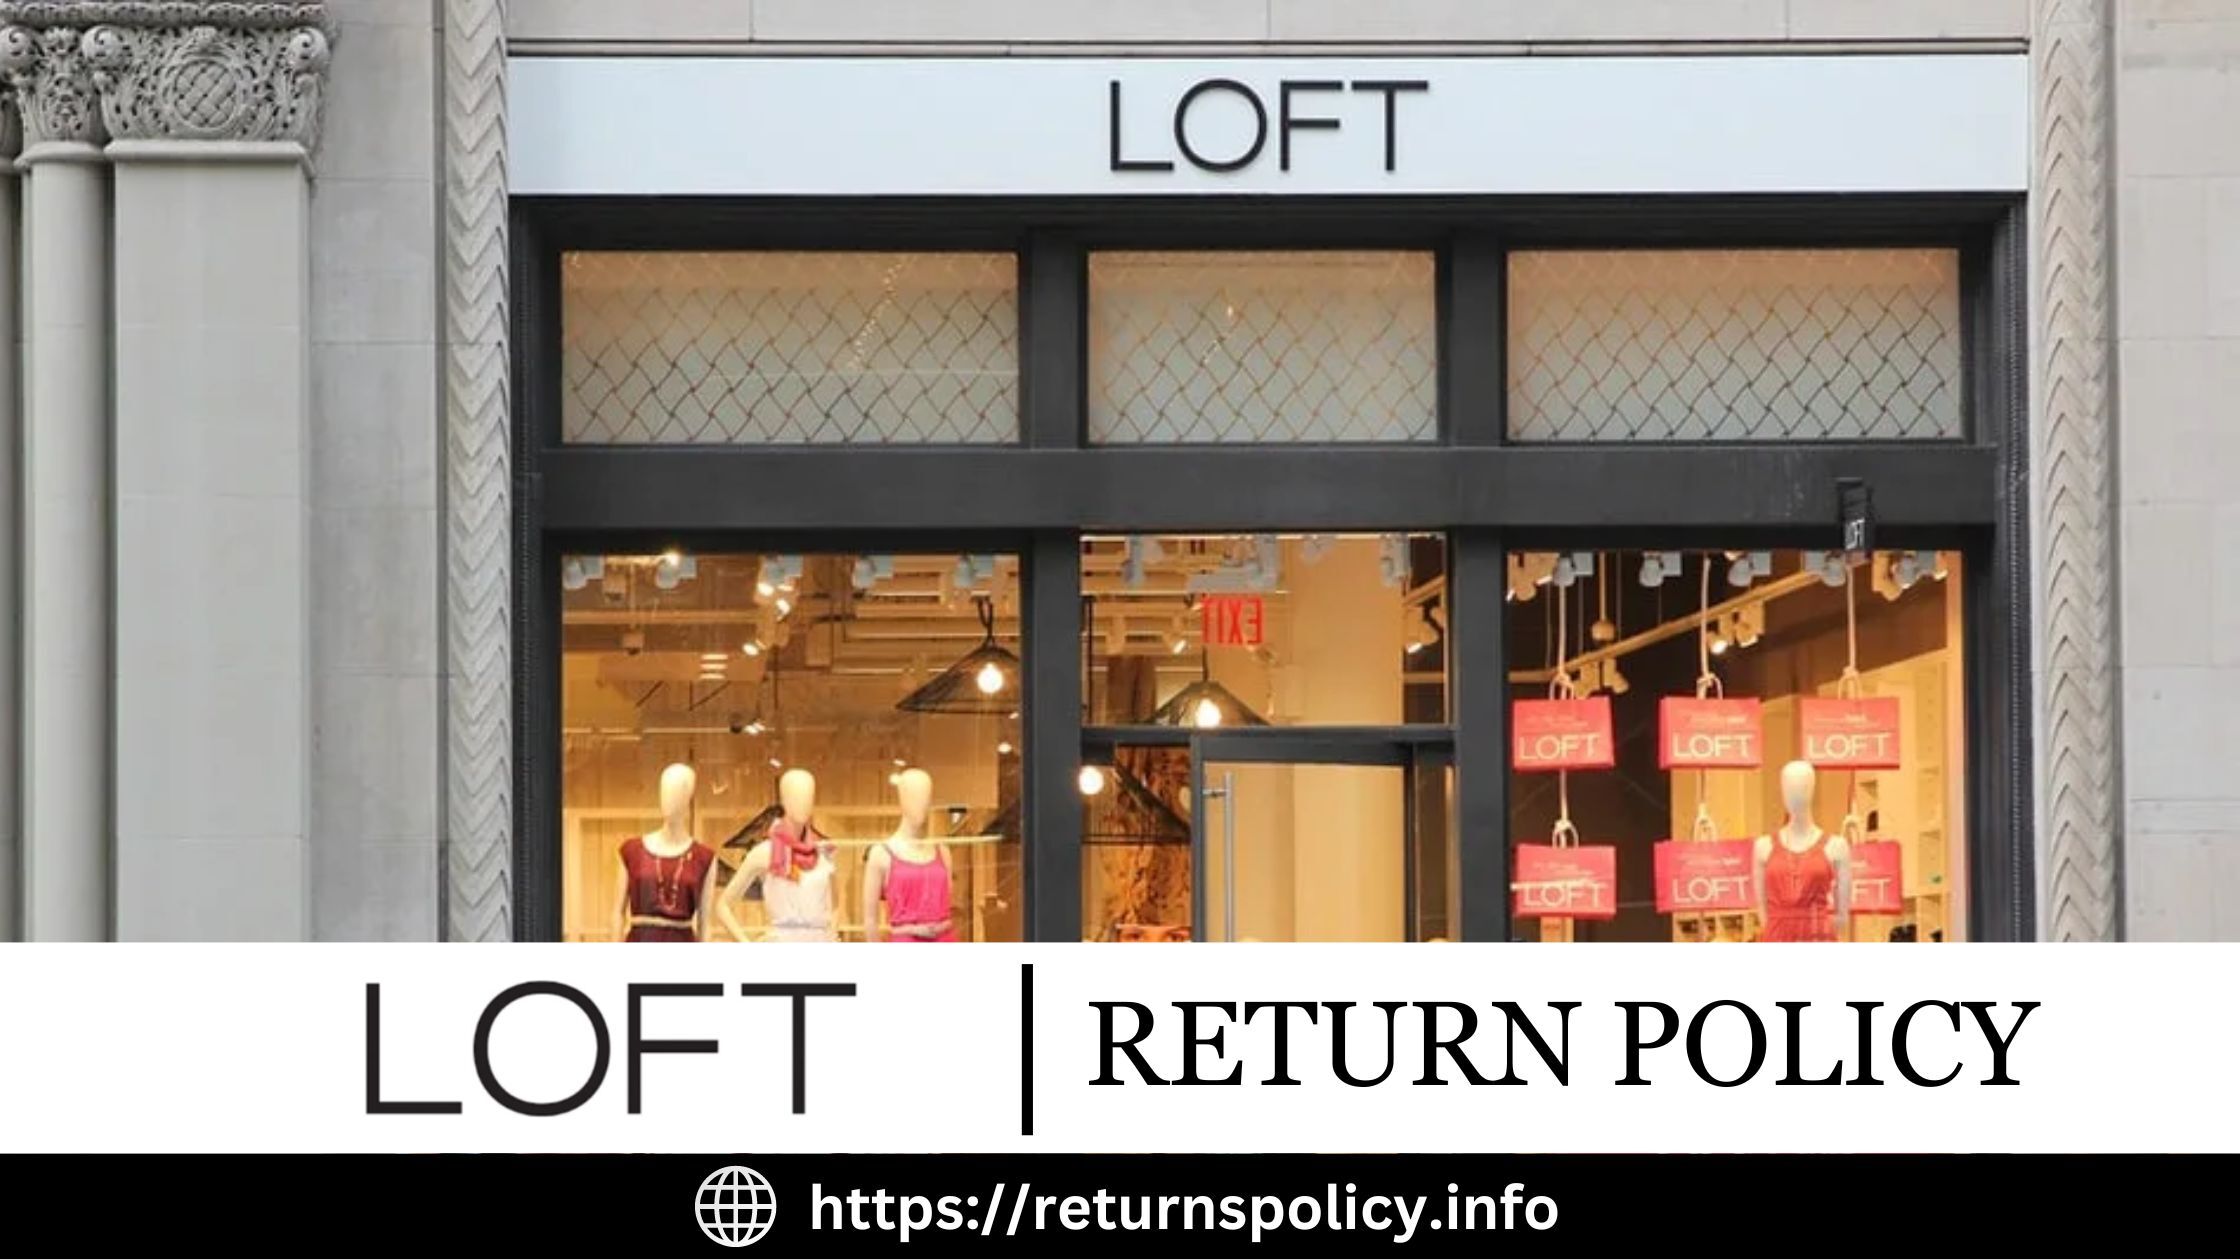 Loft Return Policy